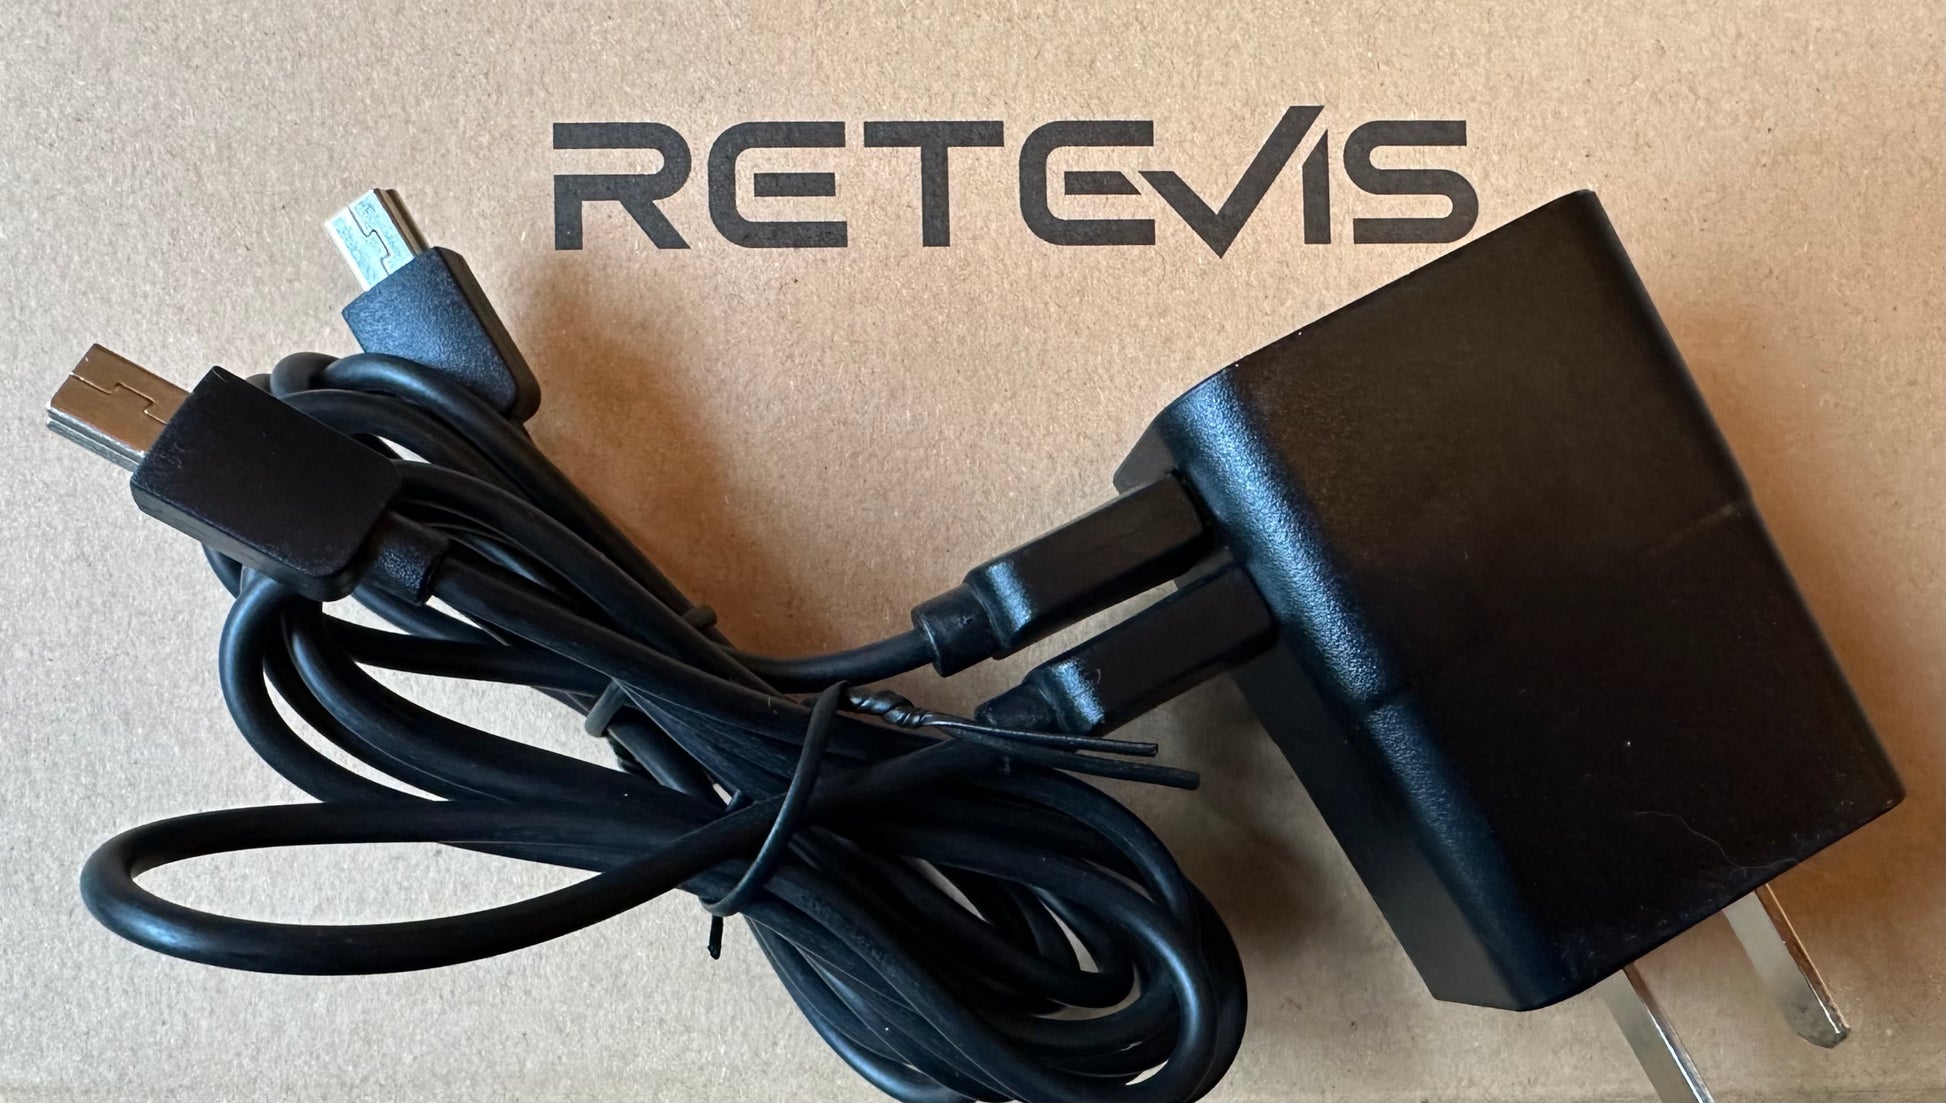 Retrieverworx Retevis radios for retriever training